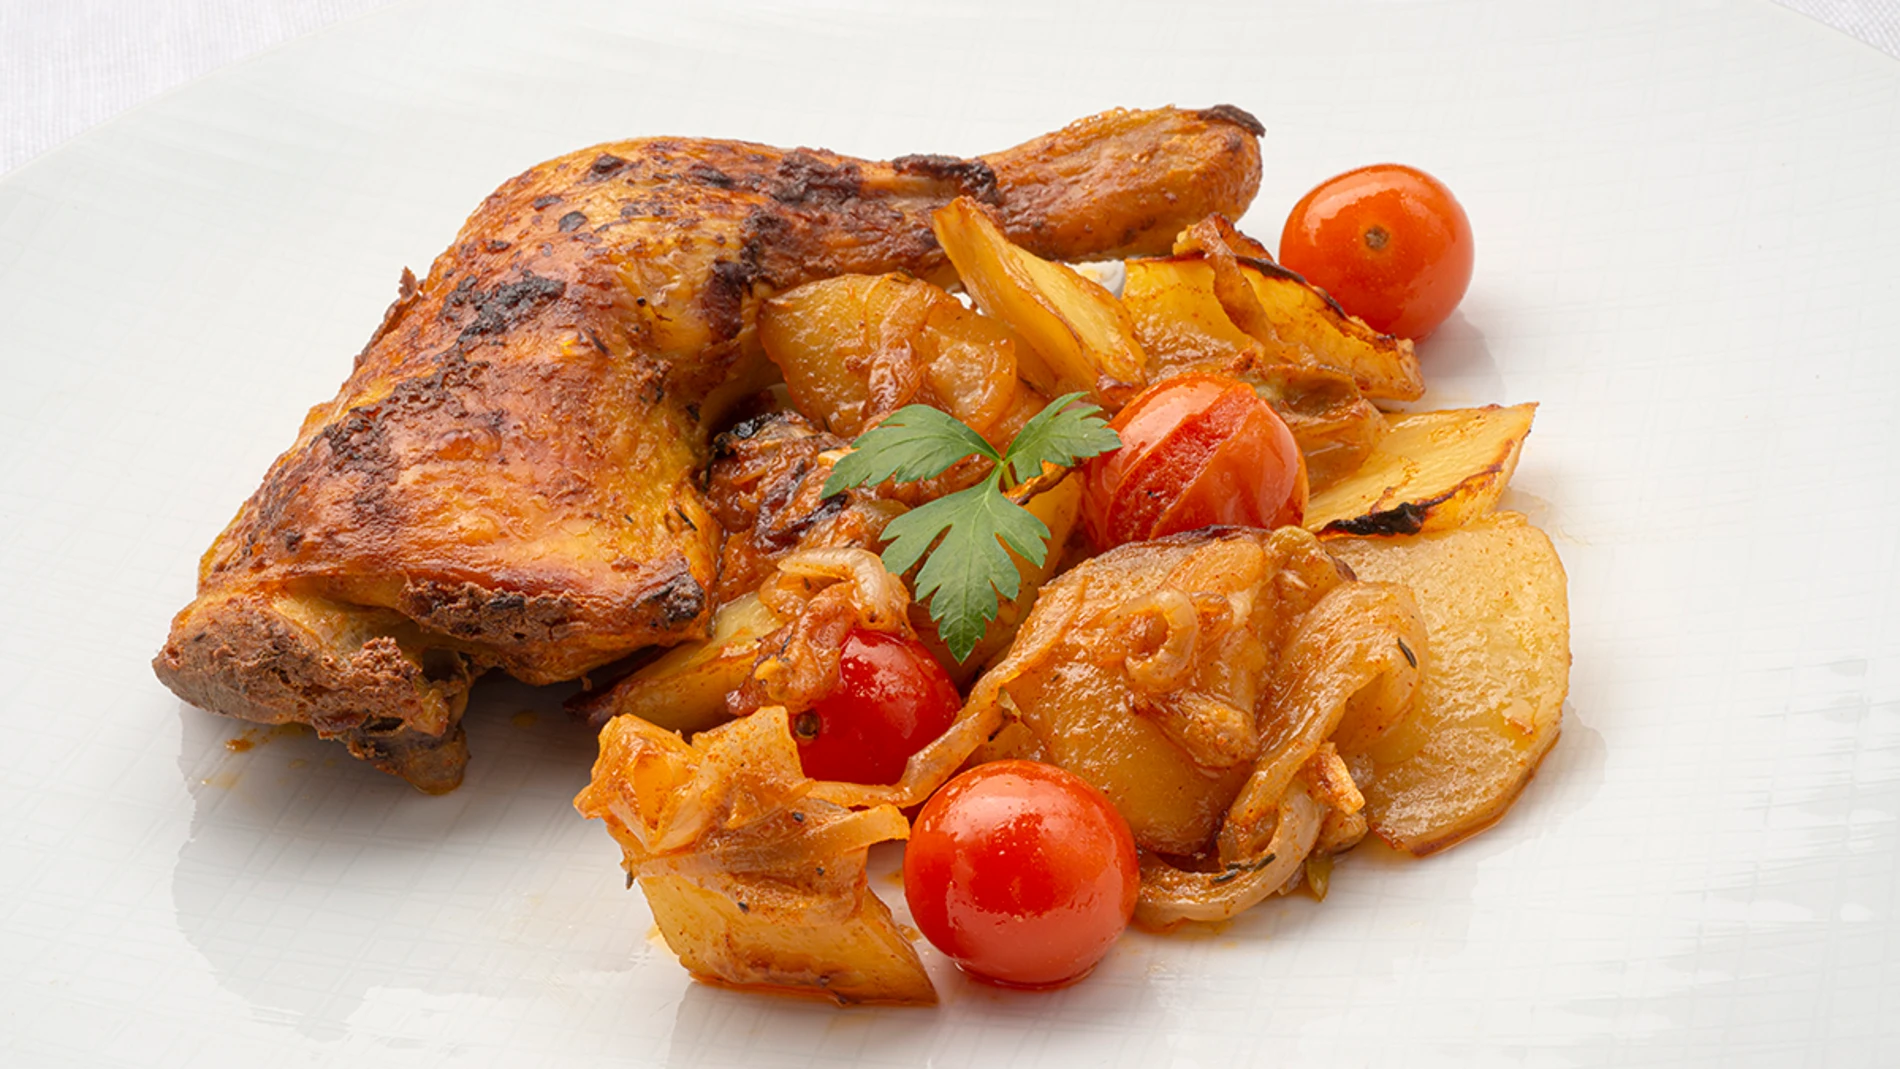 Acusación Huelga Vacaciones Receta sencilla de pollo al estilo turco con patatas y cebolla, de Karlos  Arguiñano